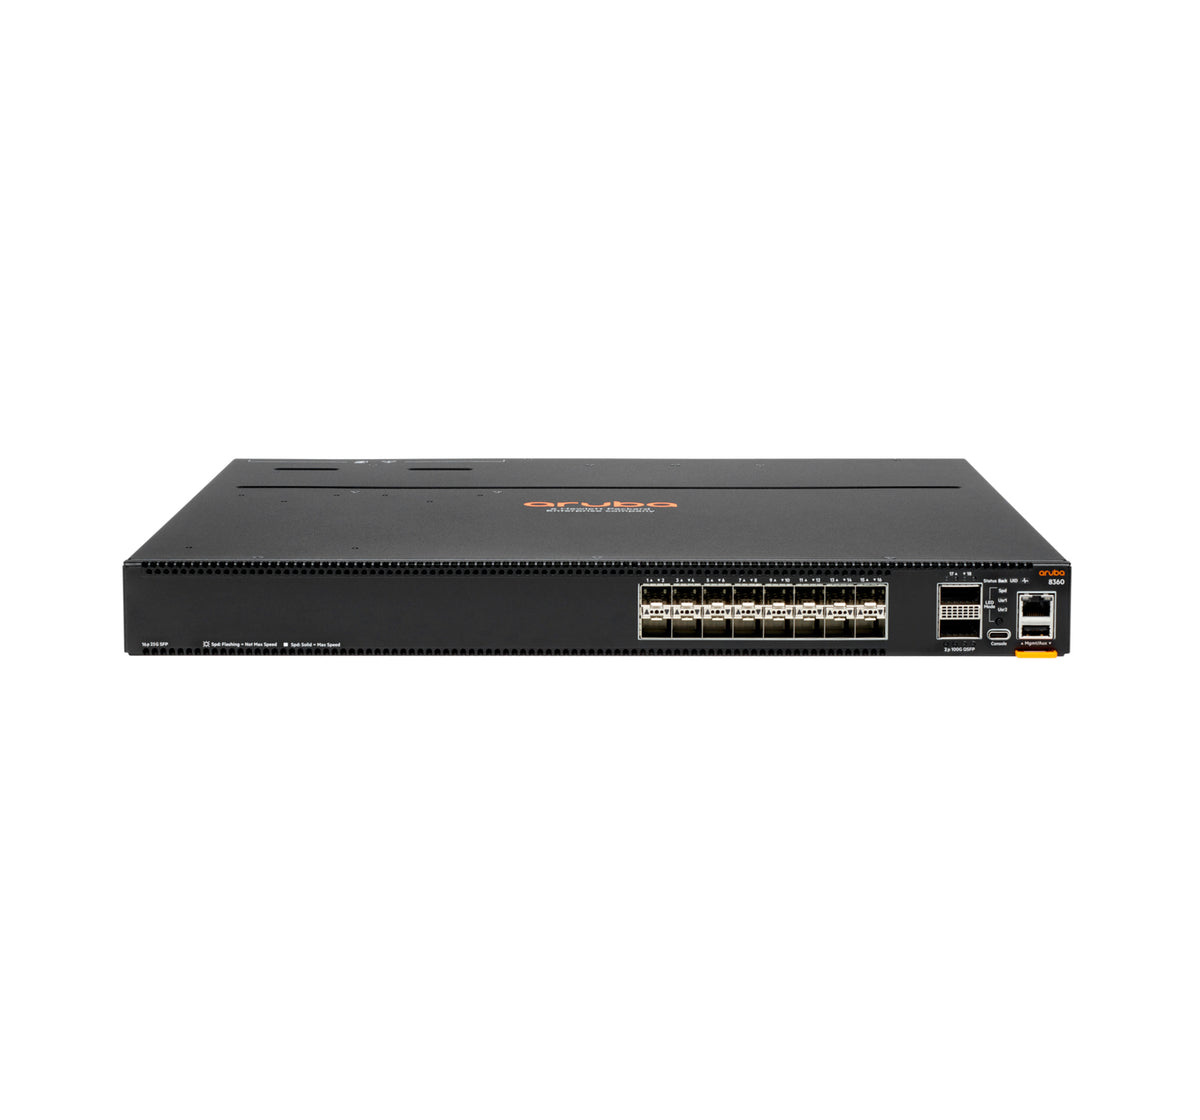 JL702A - Hewlett Packard Enterprise - Aruba 8360-16Y2C Managed L3 1U Black